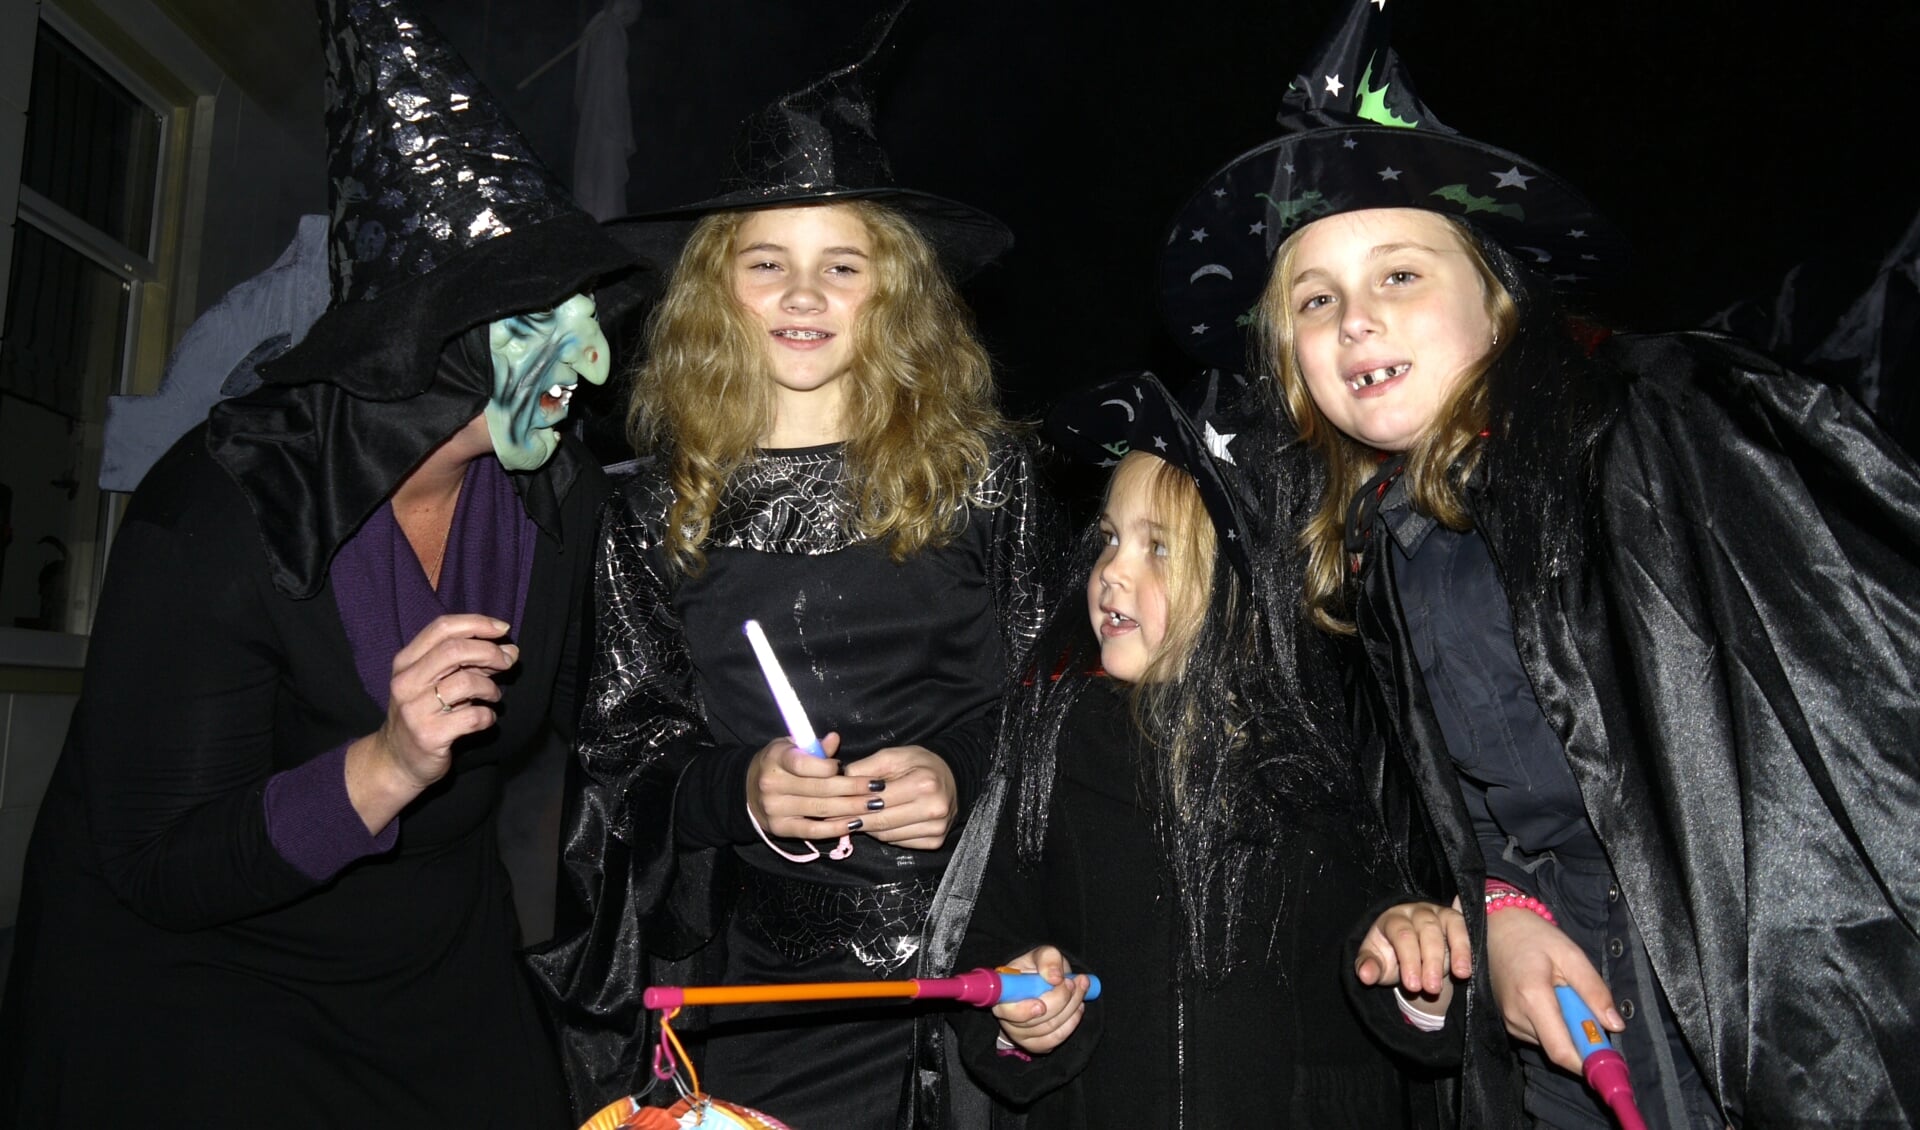 Na een onderbreking van drie jaar vanwege corona wordt er weer een Halloween speurtocht georganiseerd in Monnickendam. 